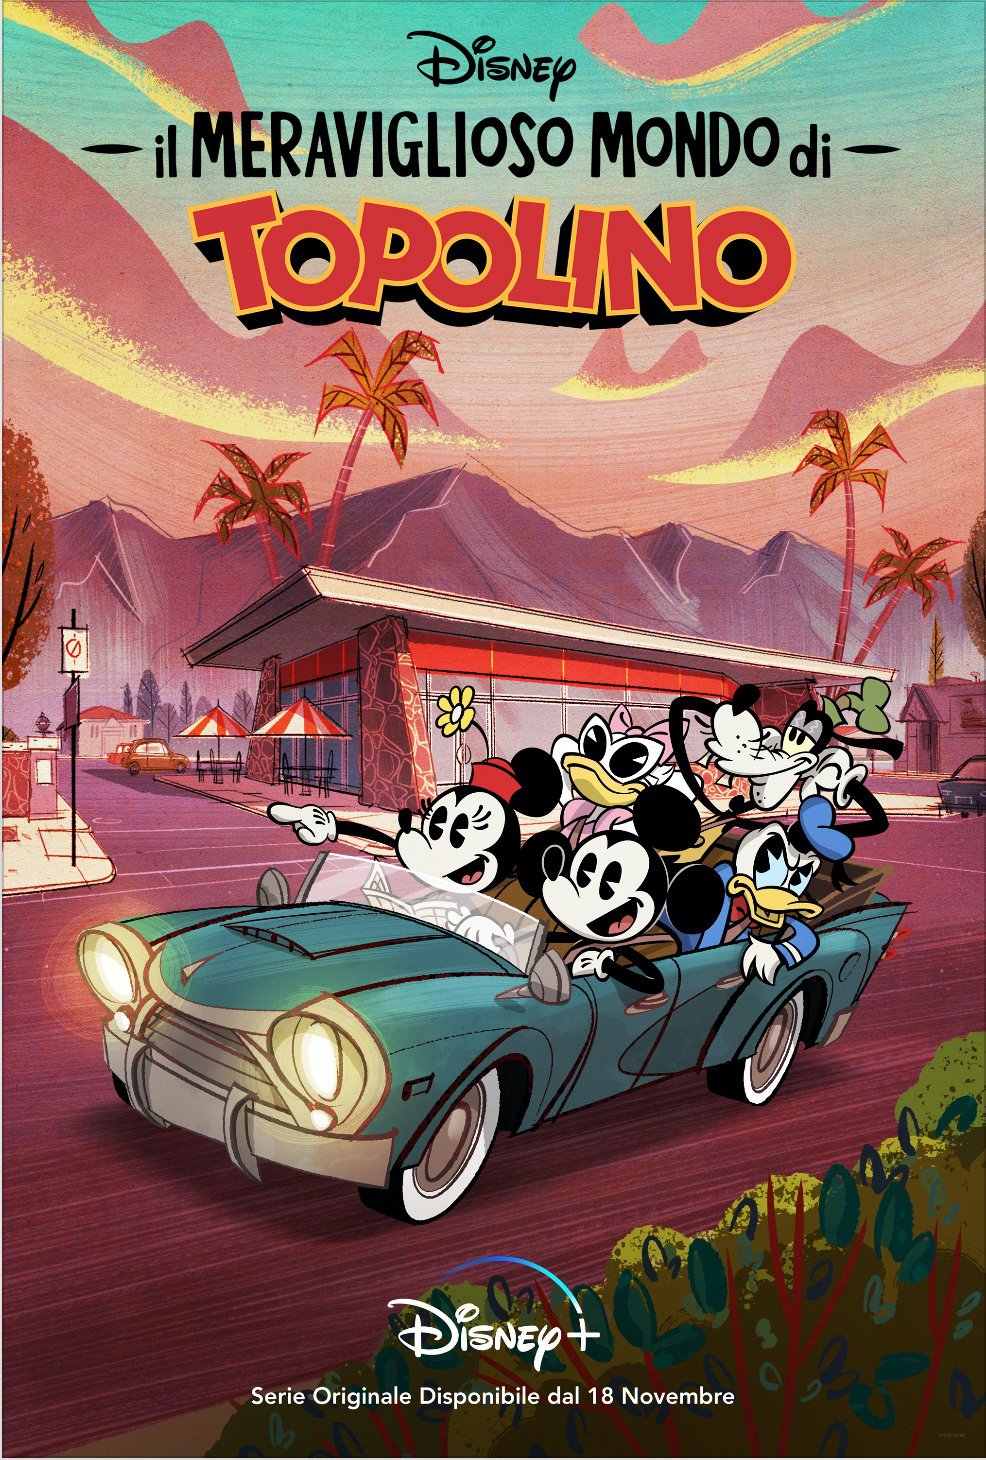 Il meraviglioso mondo di Topolino, la serie arriva su Disney+